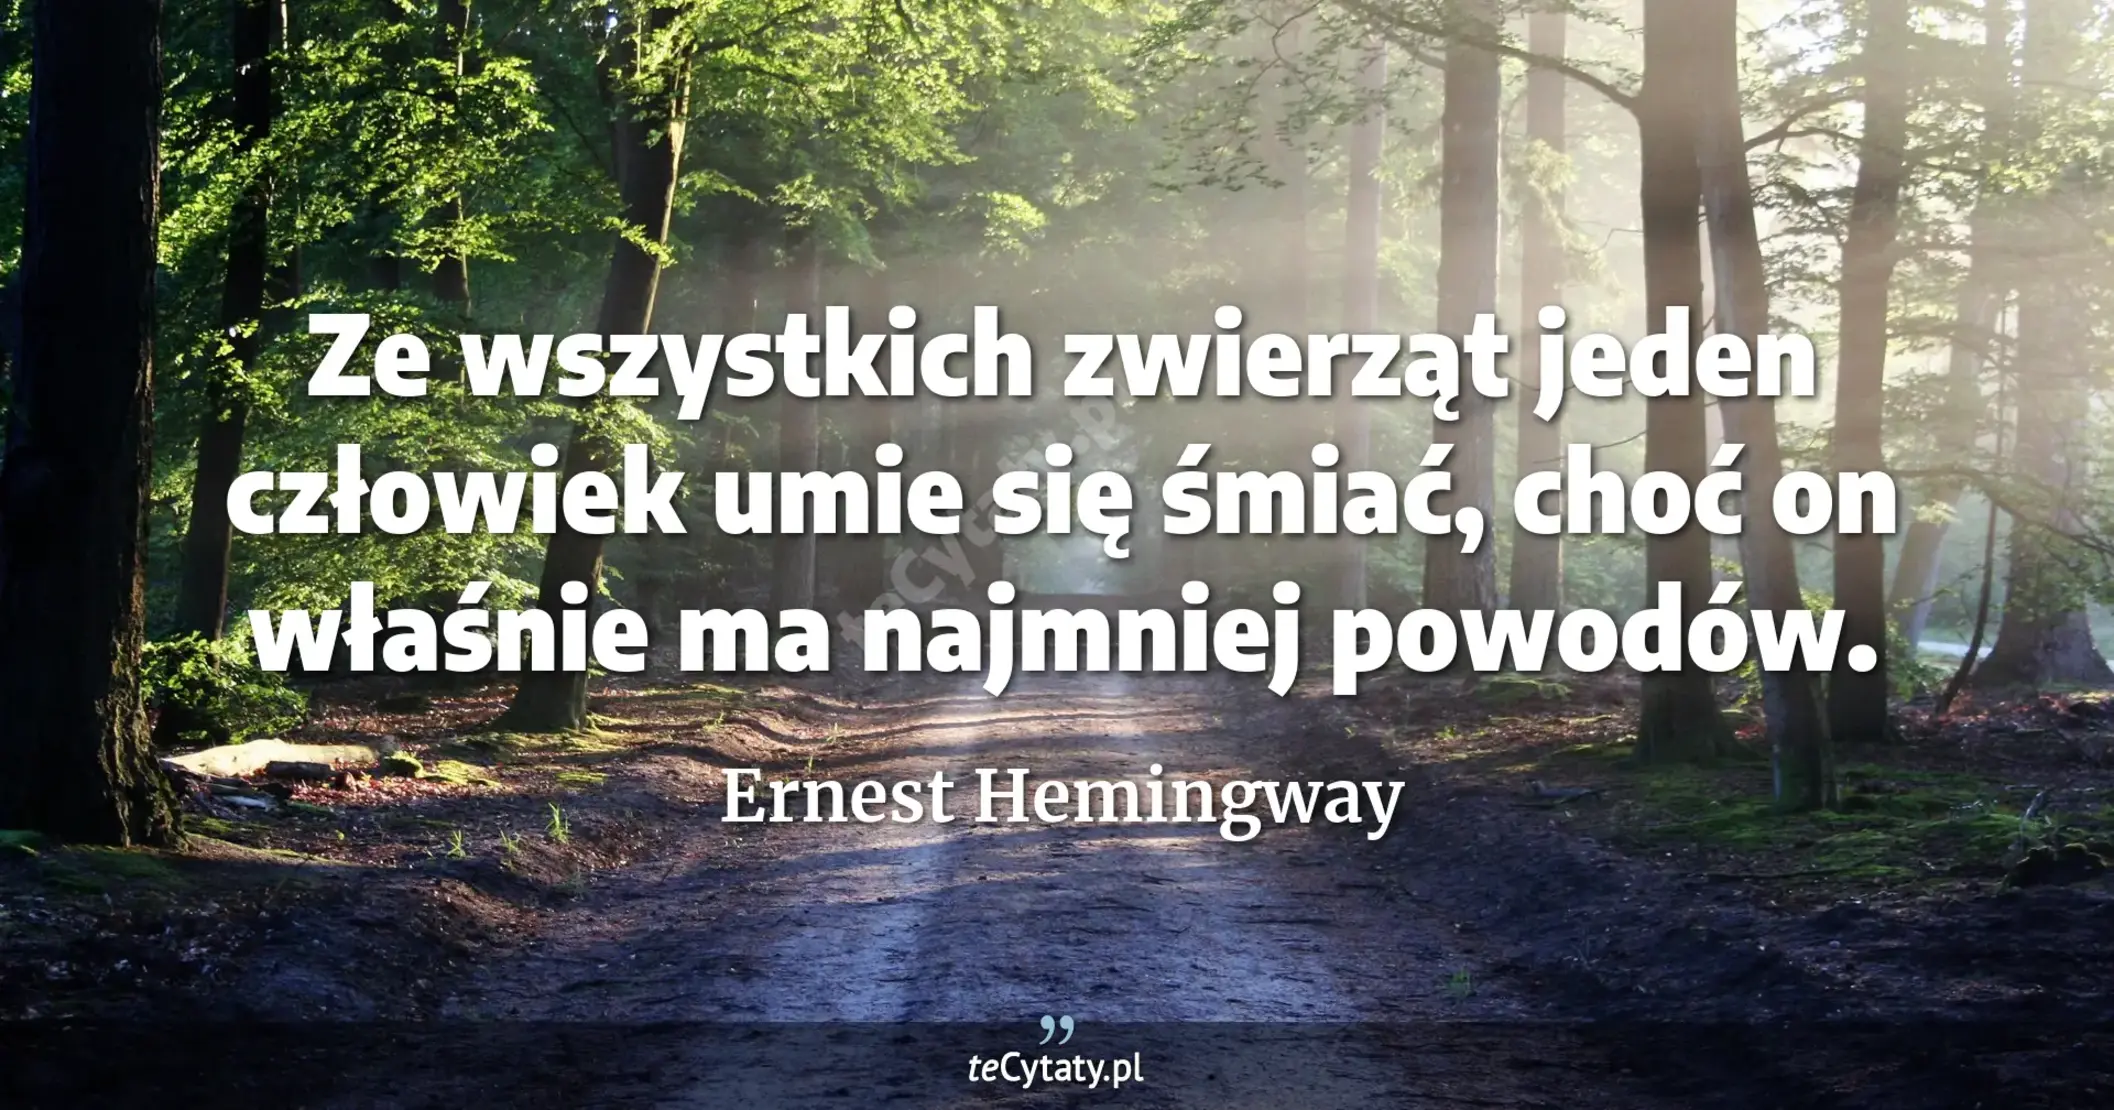 Ze wszystkich zwierząt jeden człowiek umie się śmiać, choć on właśnie ma najmniej powodów. - Ernest Hemingway